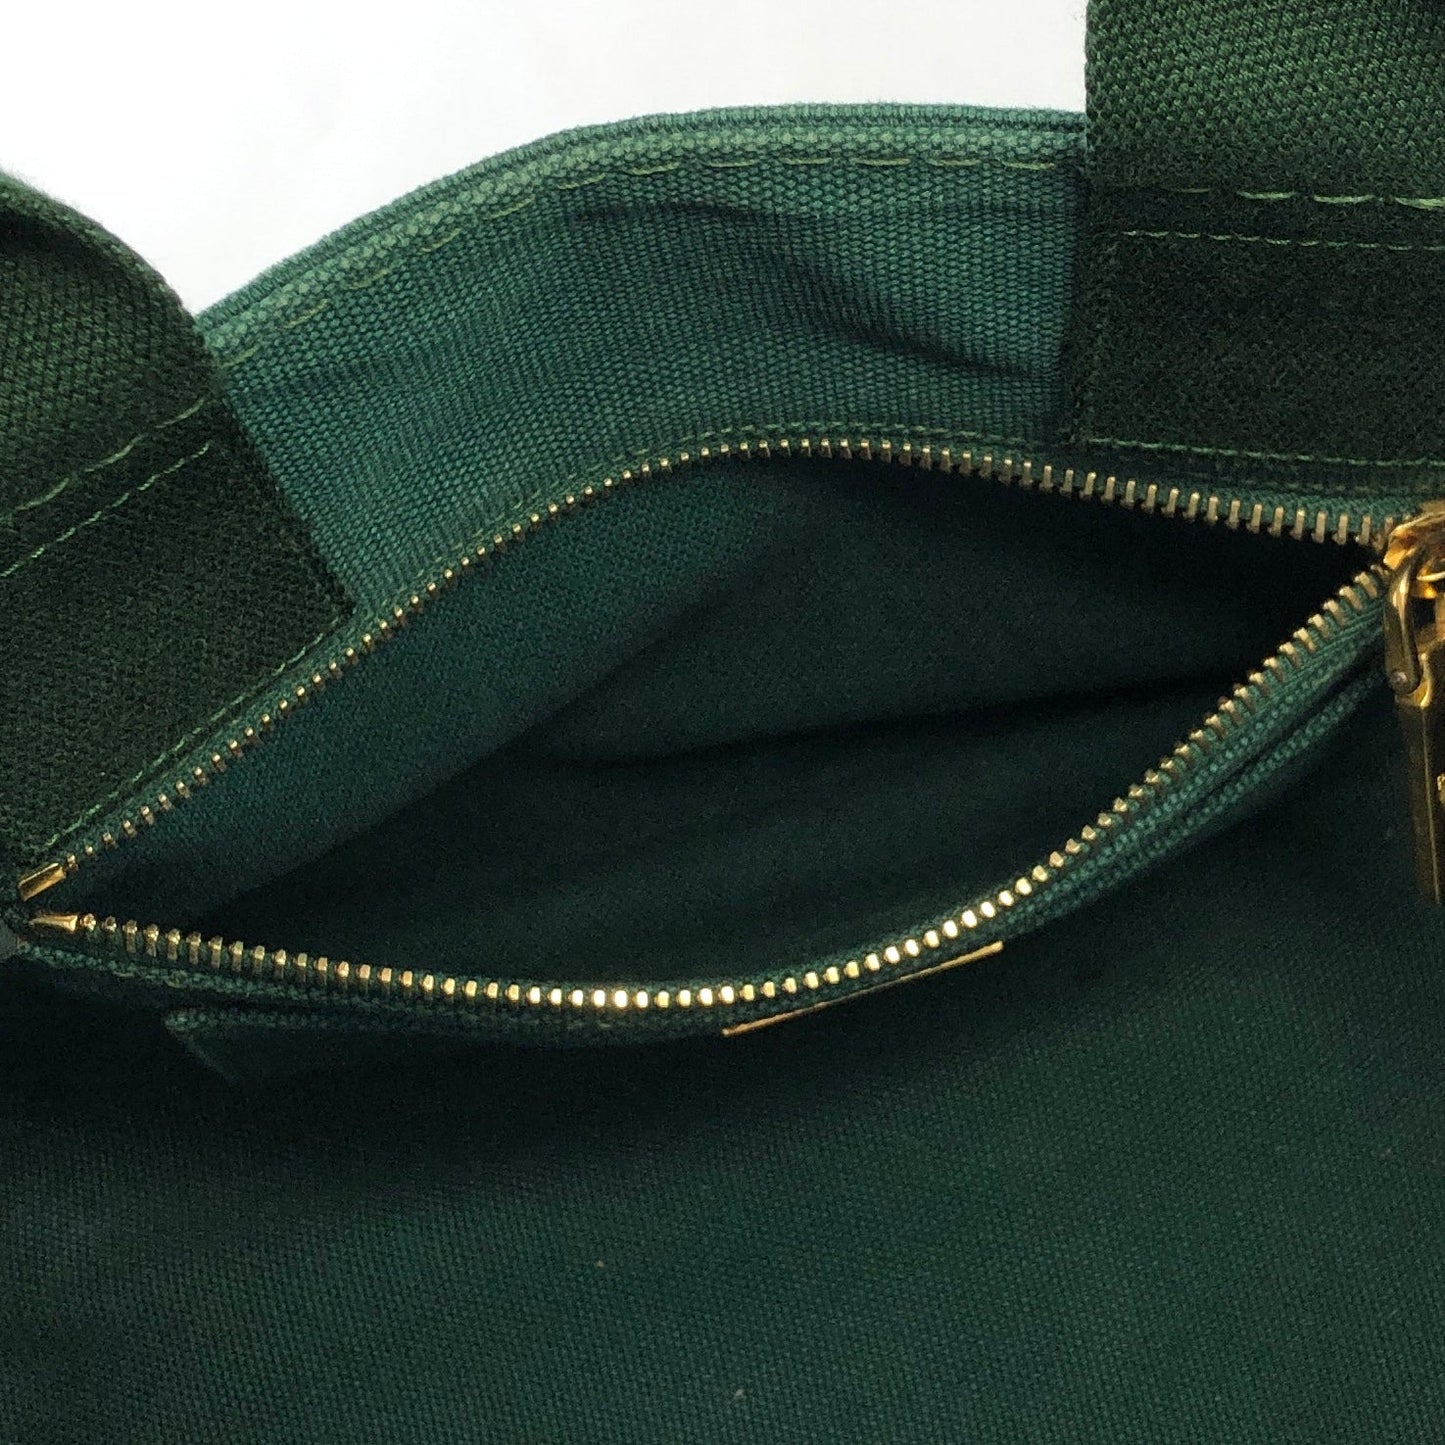 PRADA CANAPA Logo Two-way Handbag Shoulder bag Green Vintage Old gp3fik